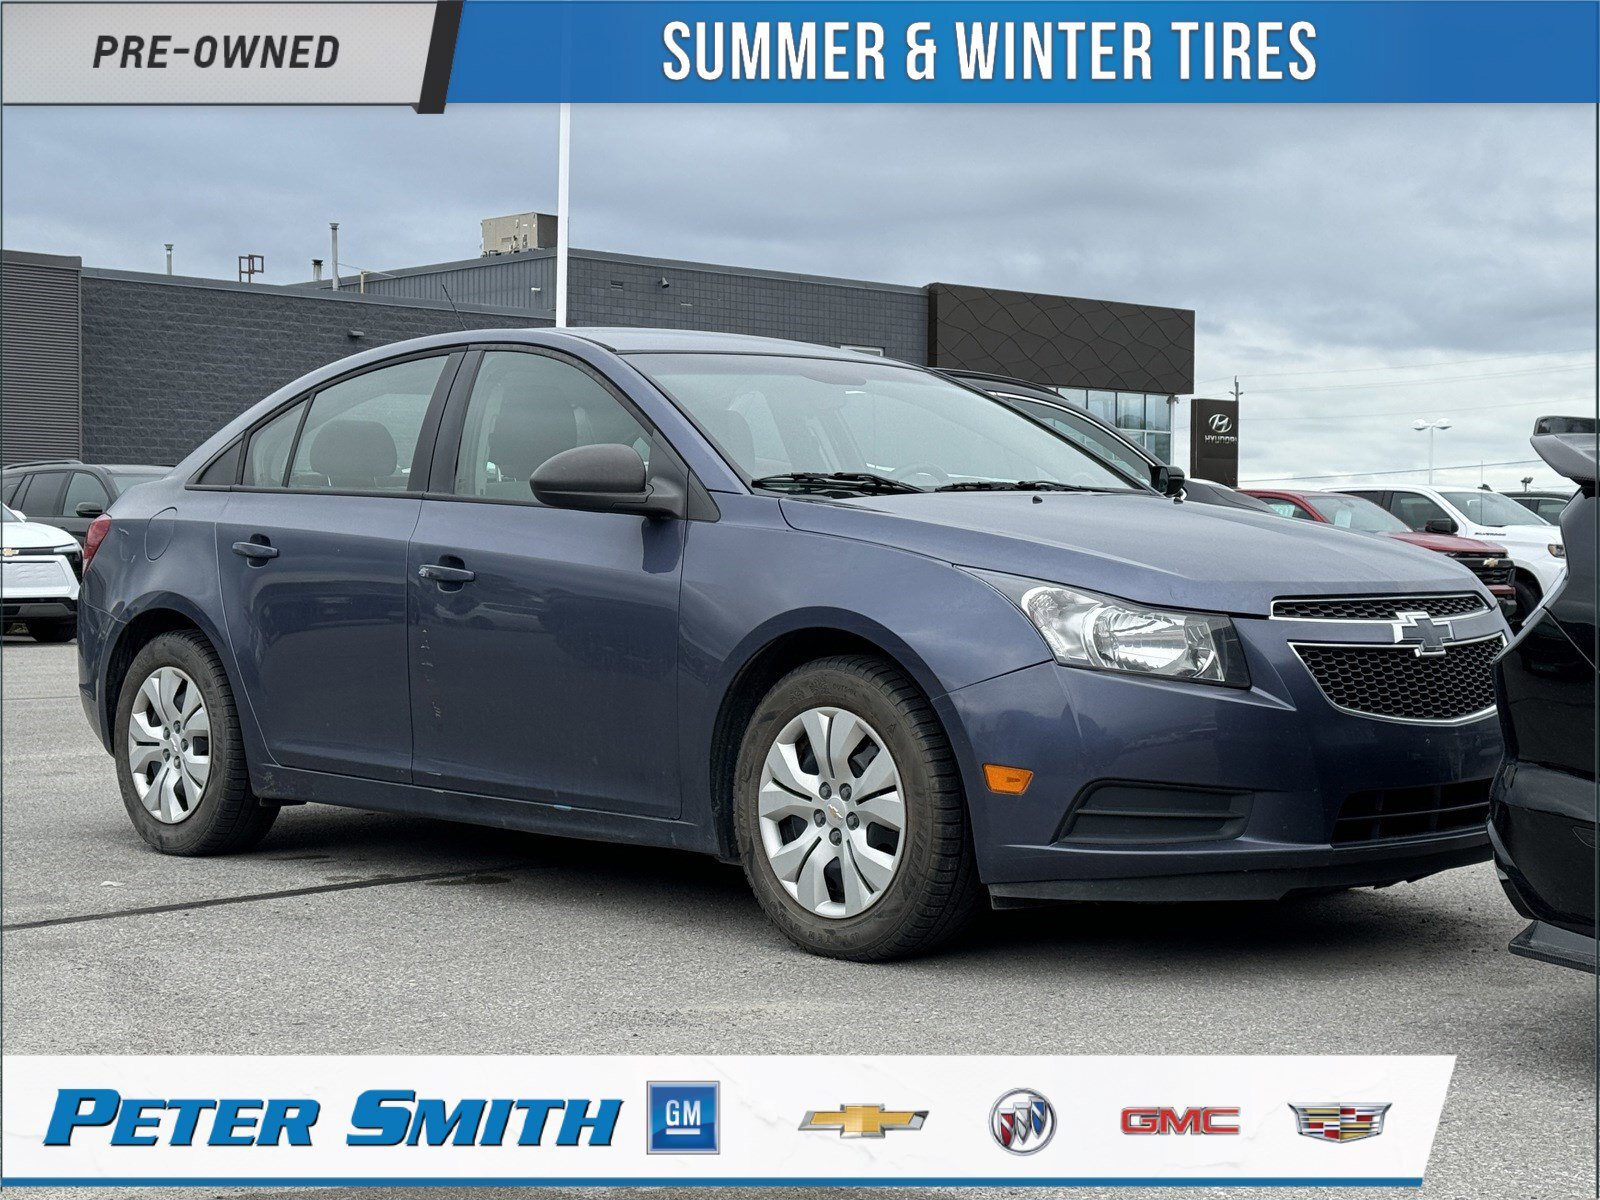 2014 Chevrolet Cruze 1LS - Manual | Summer & Winter Tires